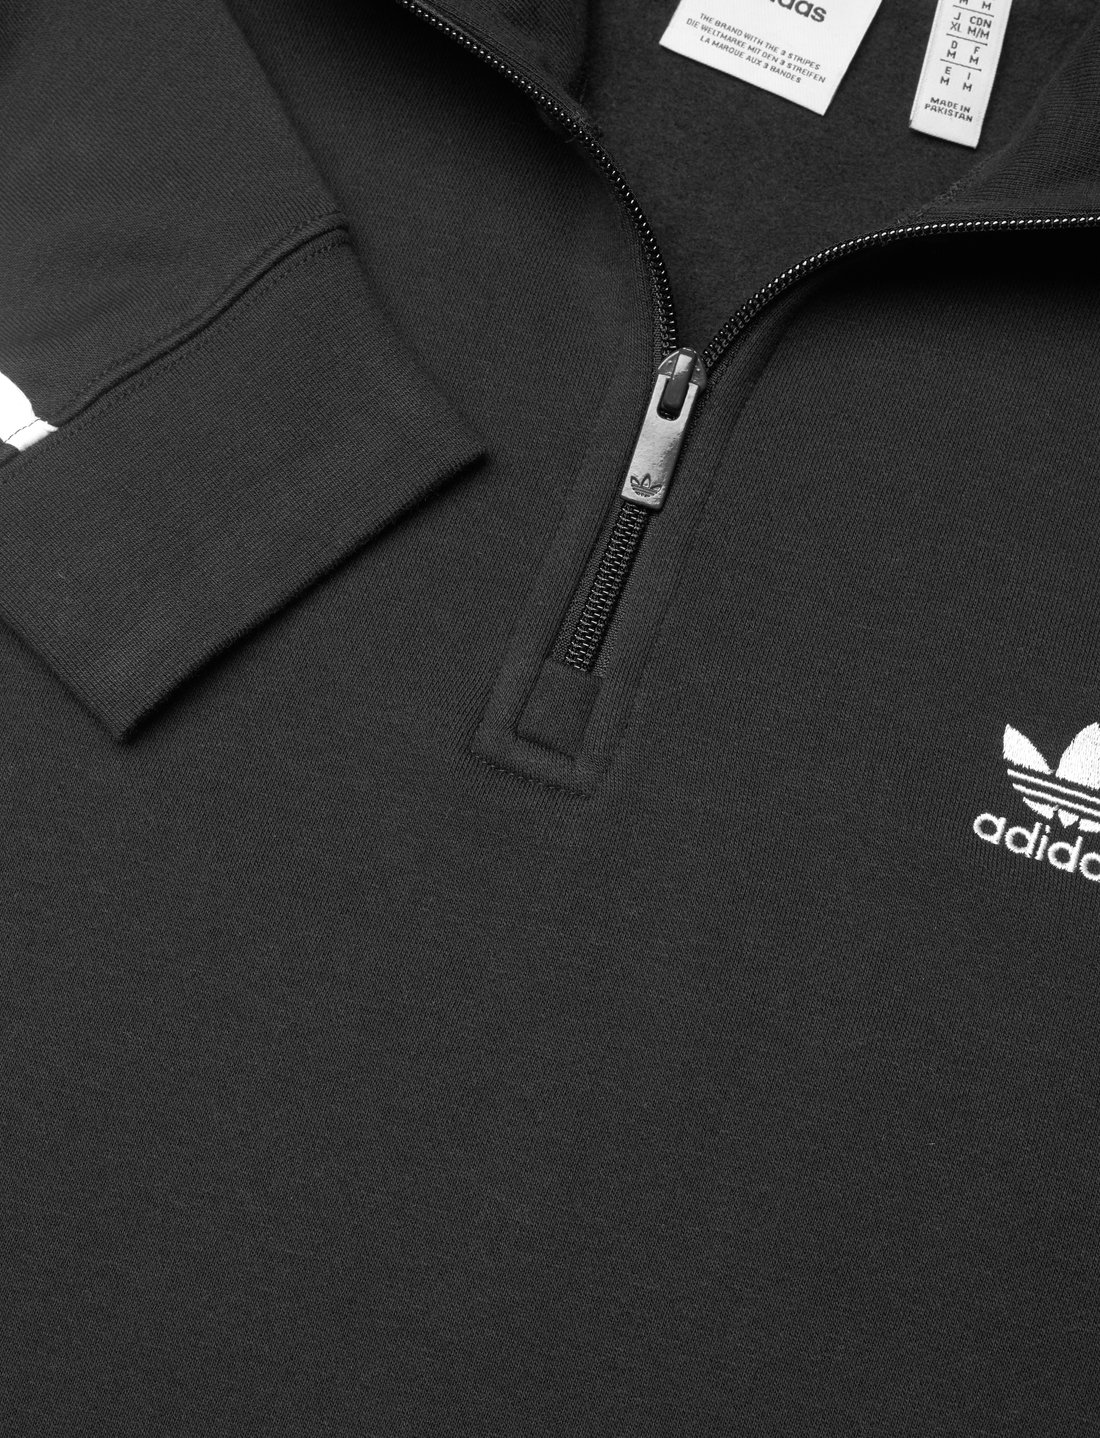 adidas Originals 3-stripe Hz Crw - Sweatshirts